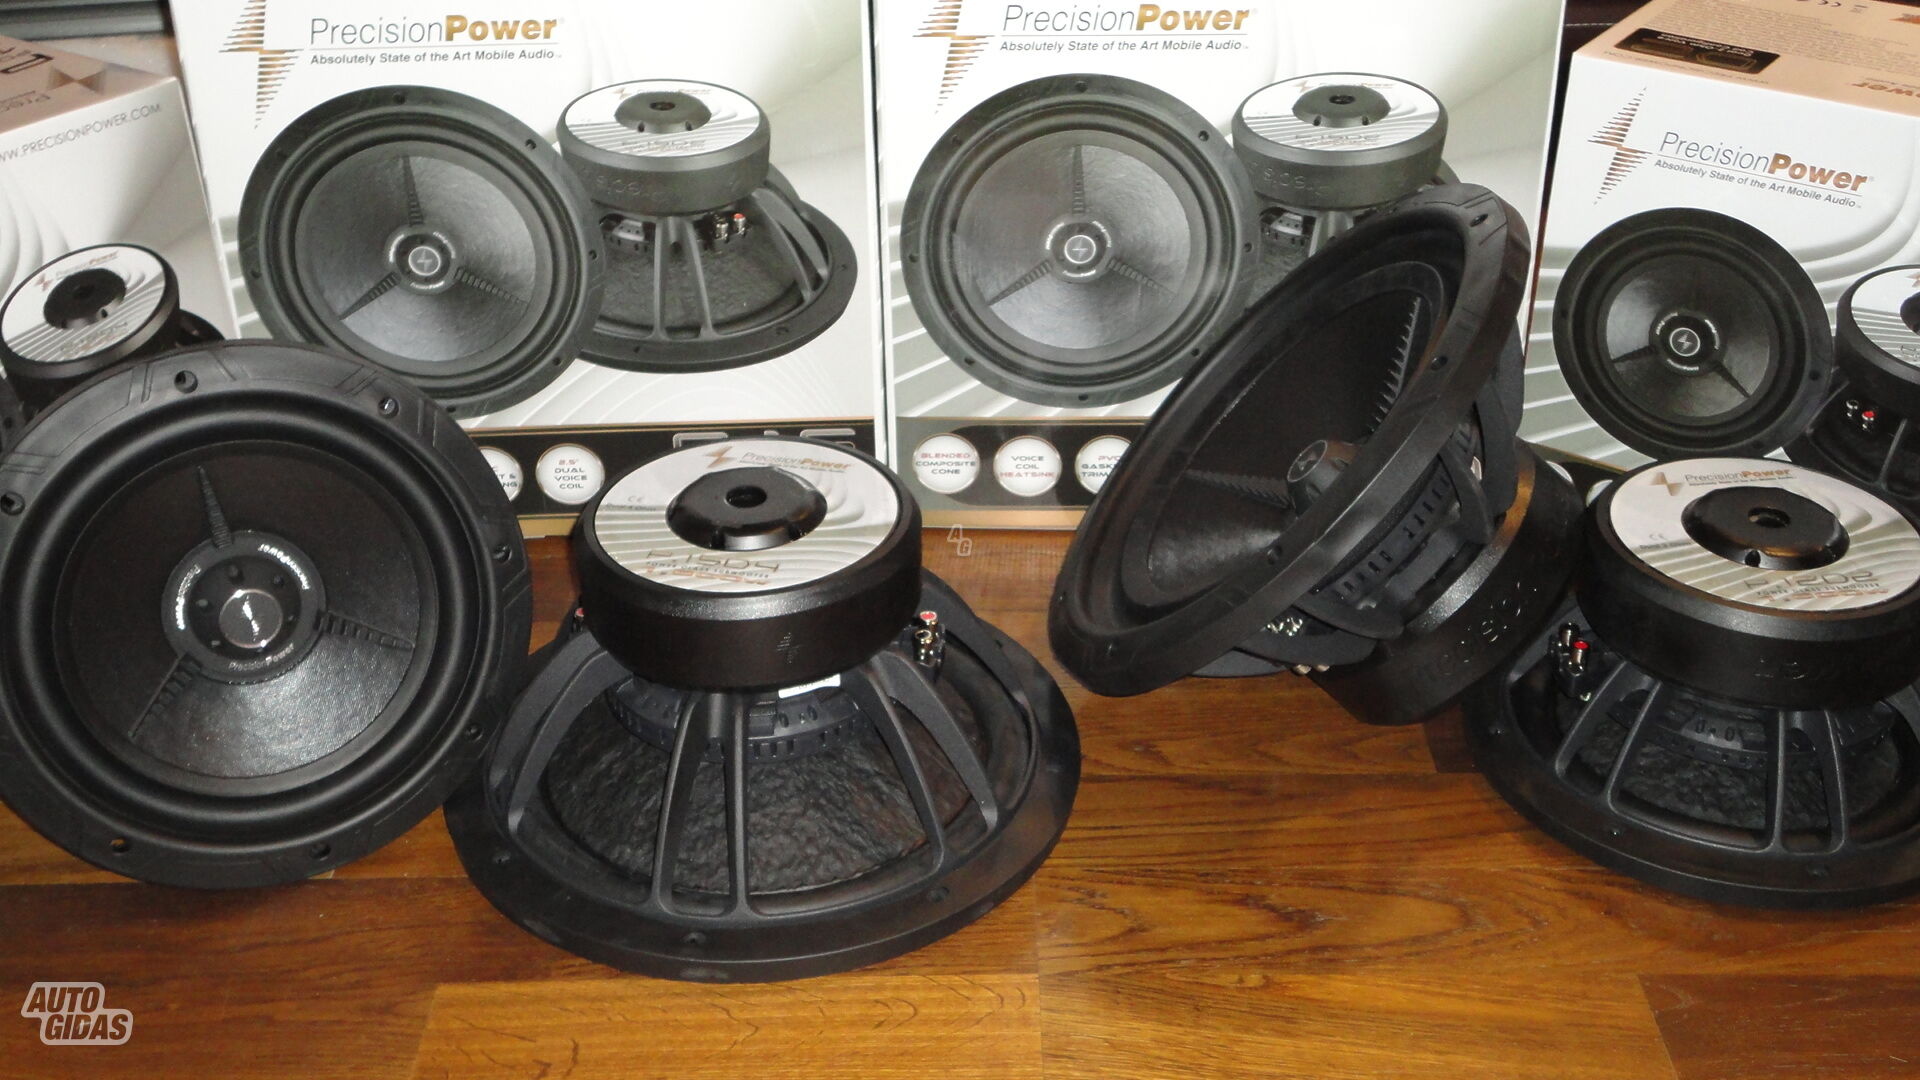 Precision Power P.12d2/d4  Subwoofer Speaker